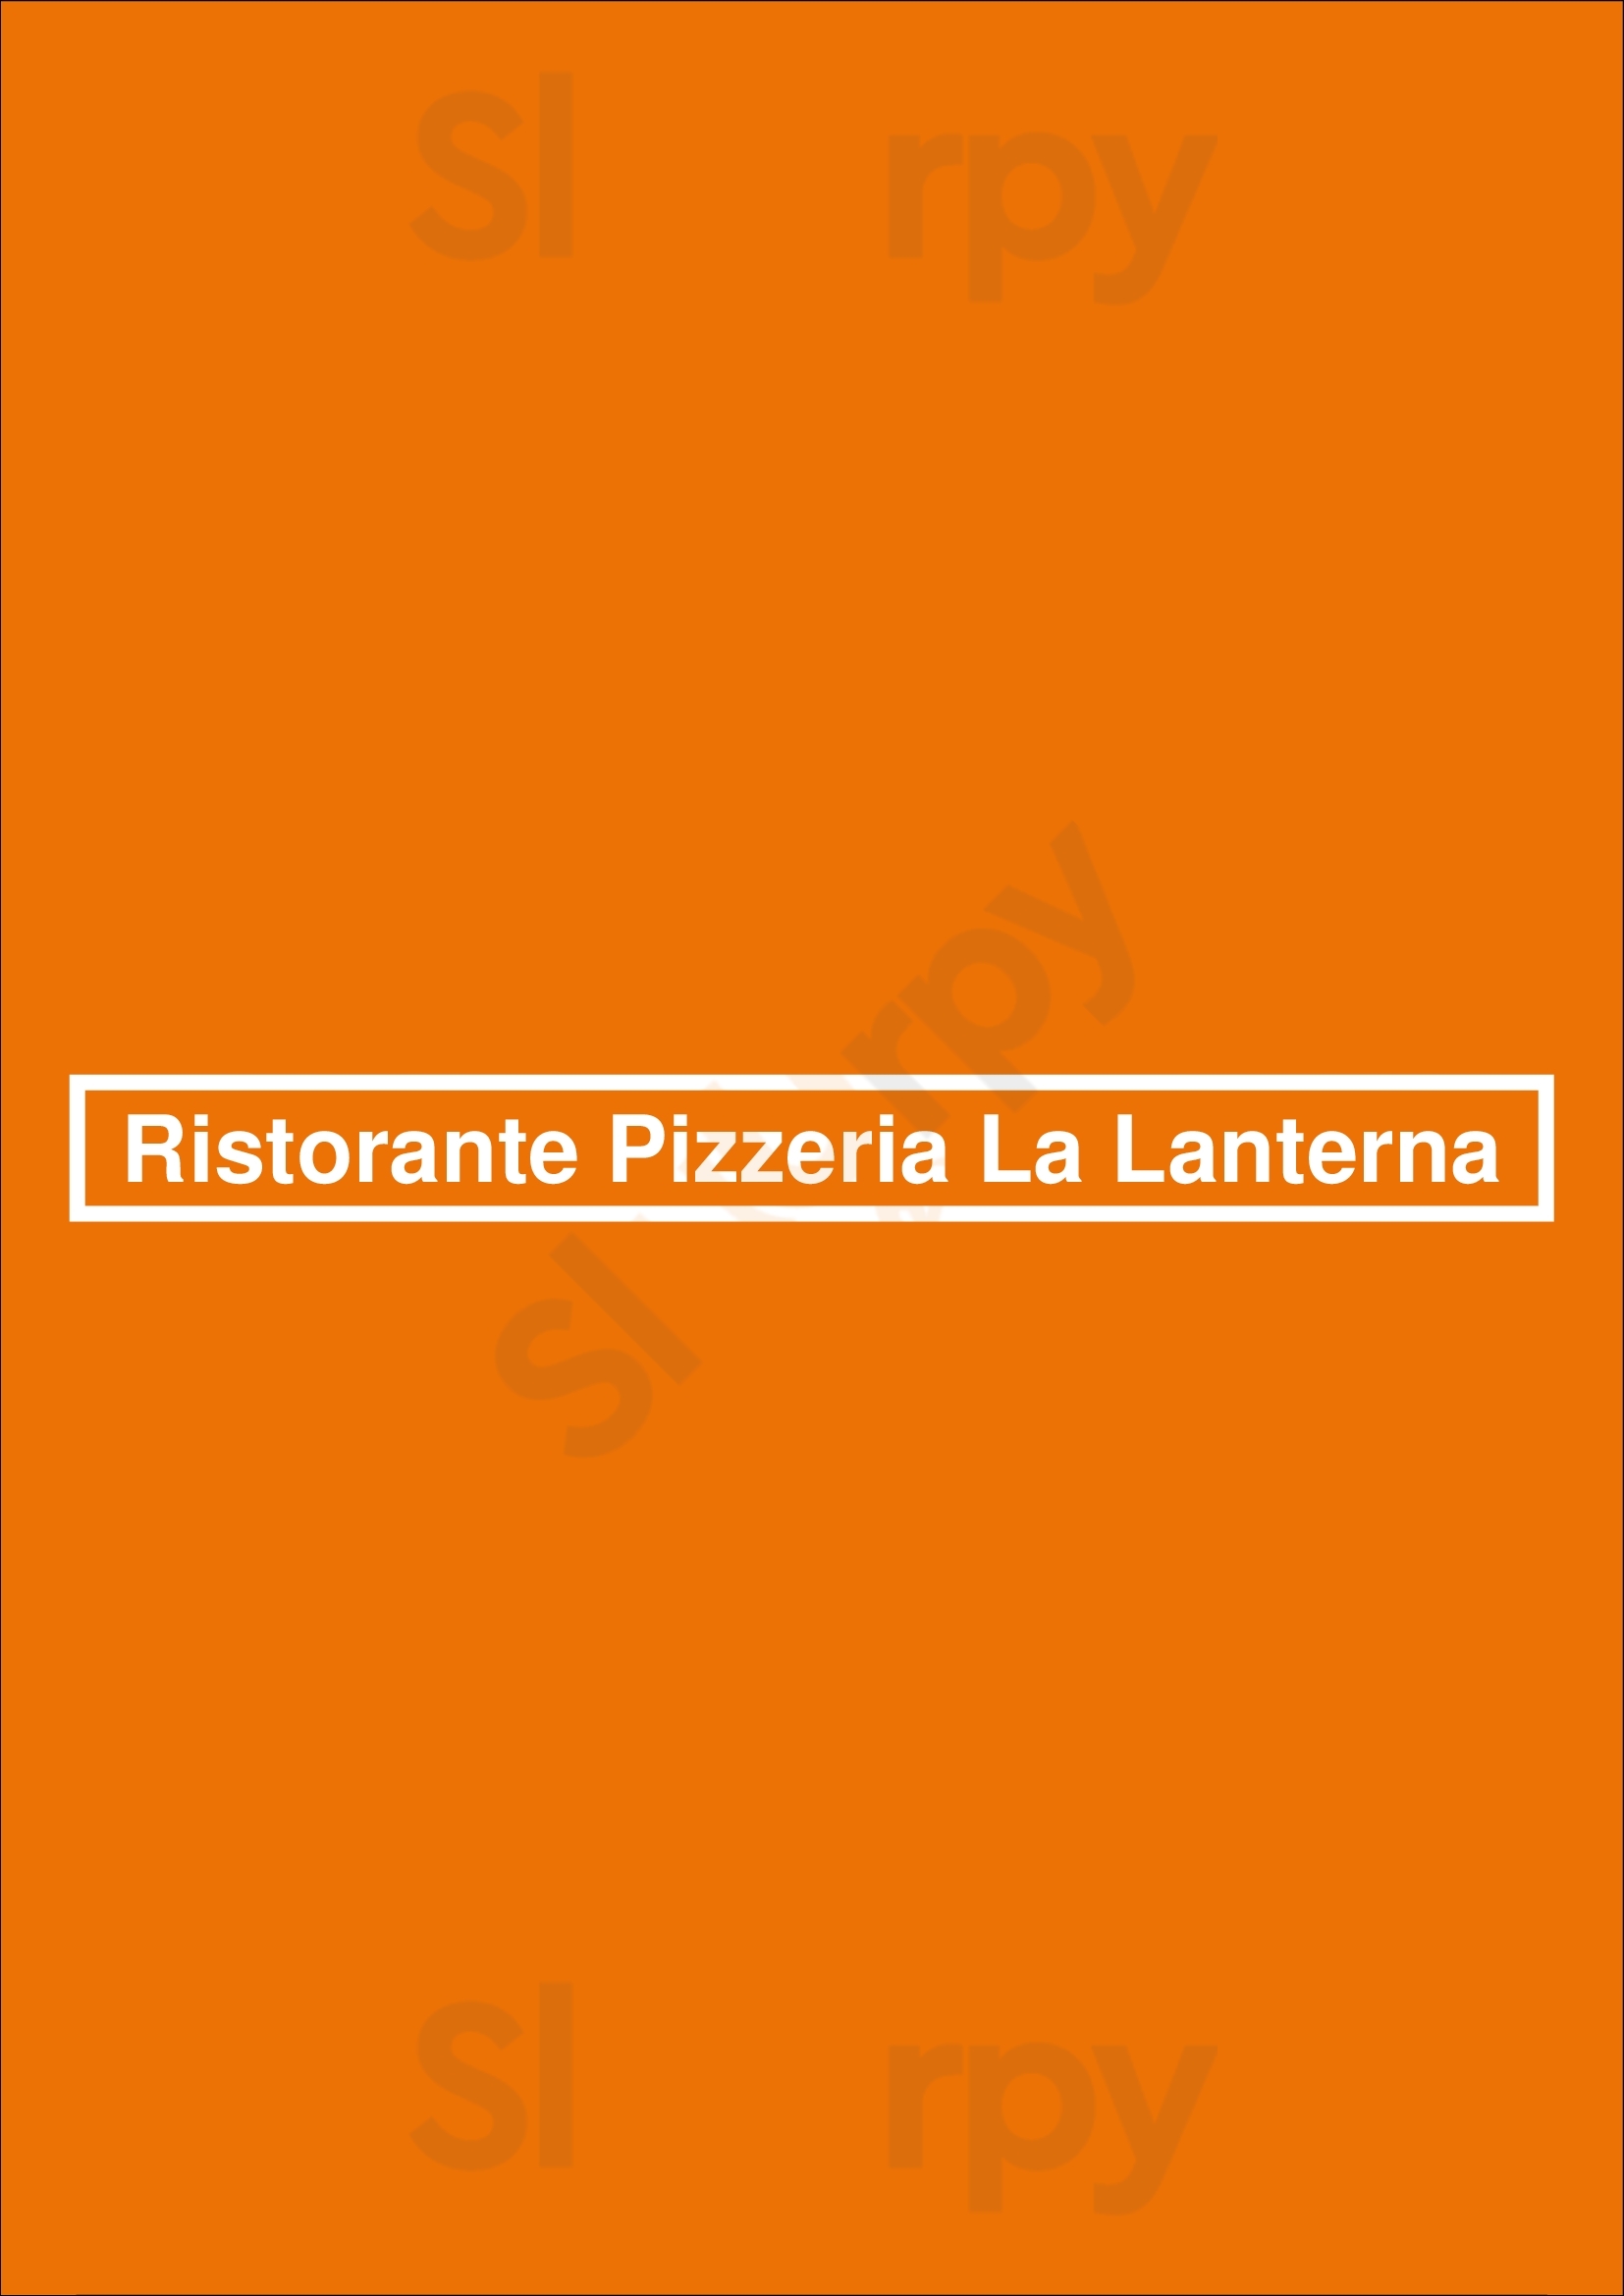 Ristorante Pizzeria La Lanterna Den Haag Menu - 1